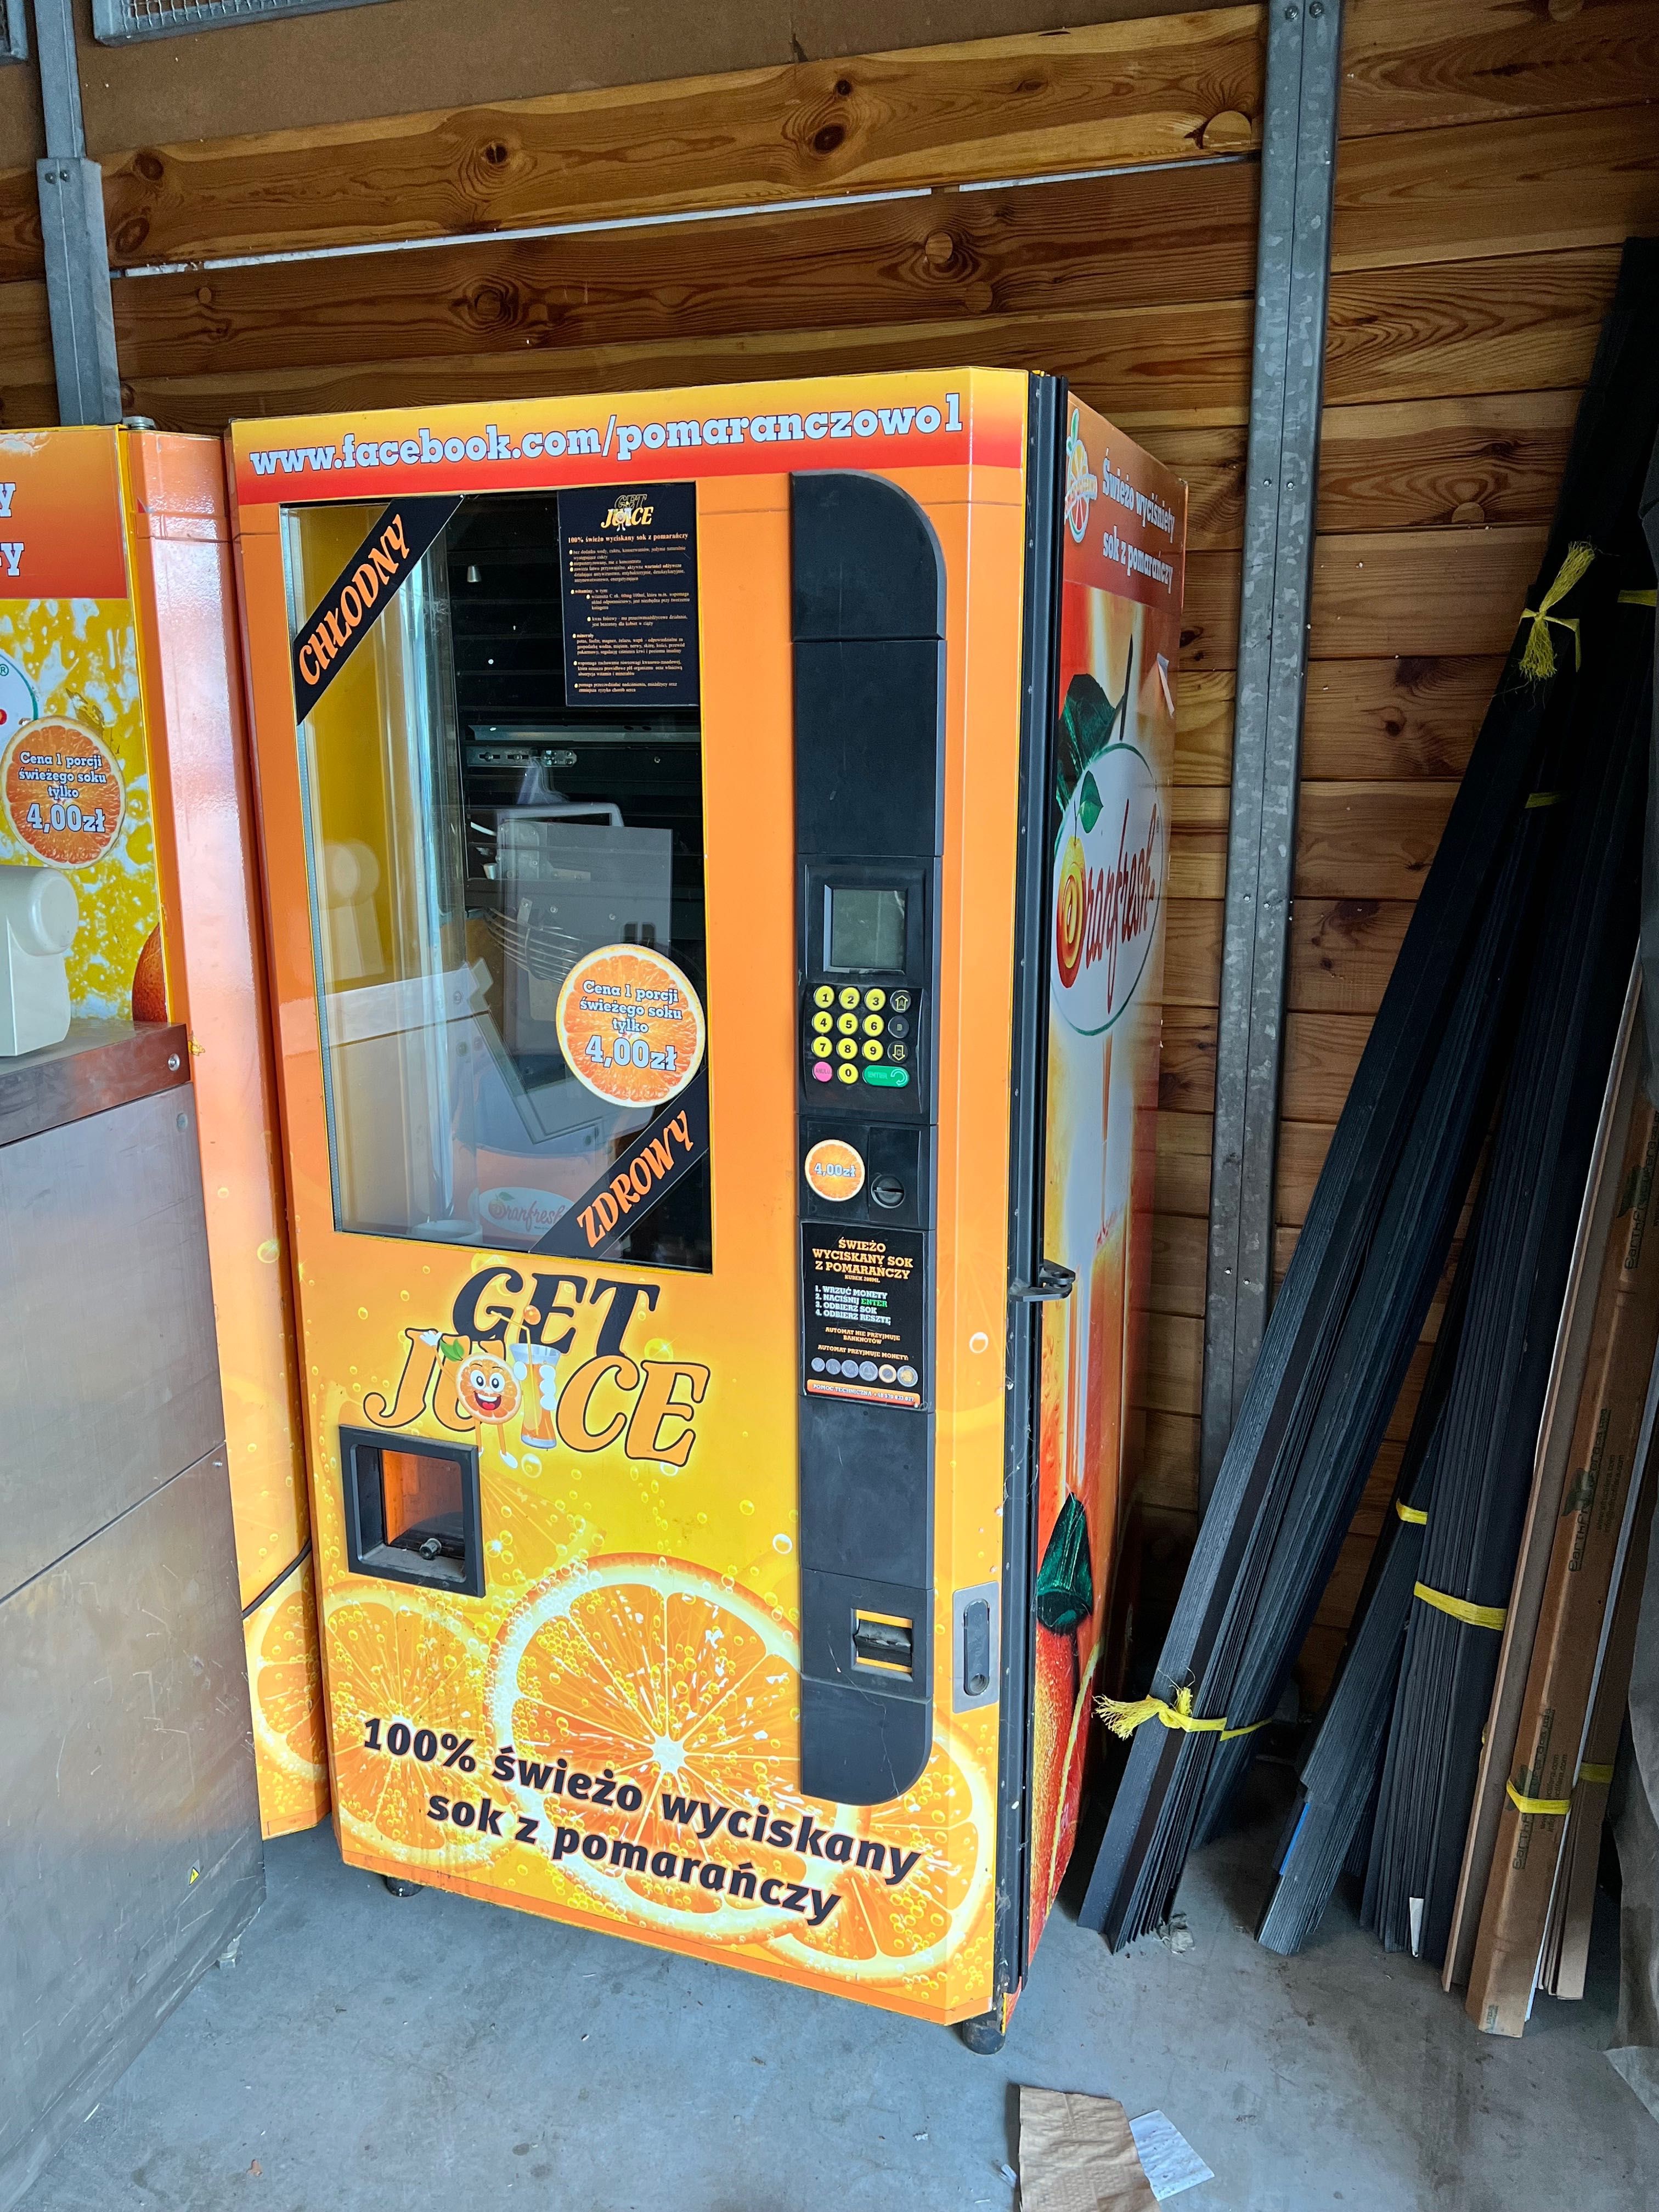 Sokomat Automat Vendingowy Sok z Pomarańczy LUBLIN / WARSZAWA